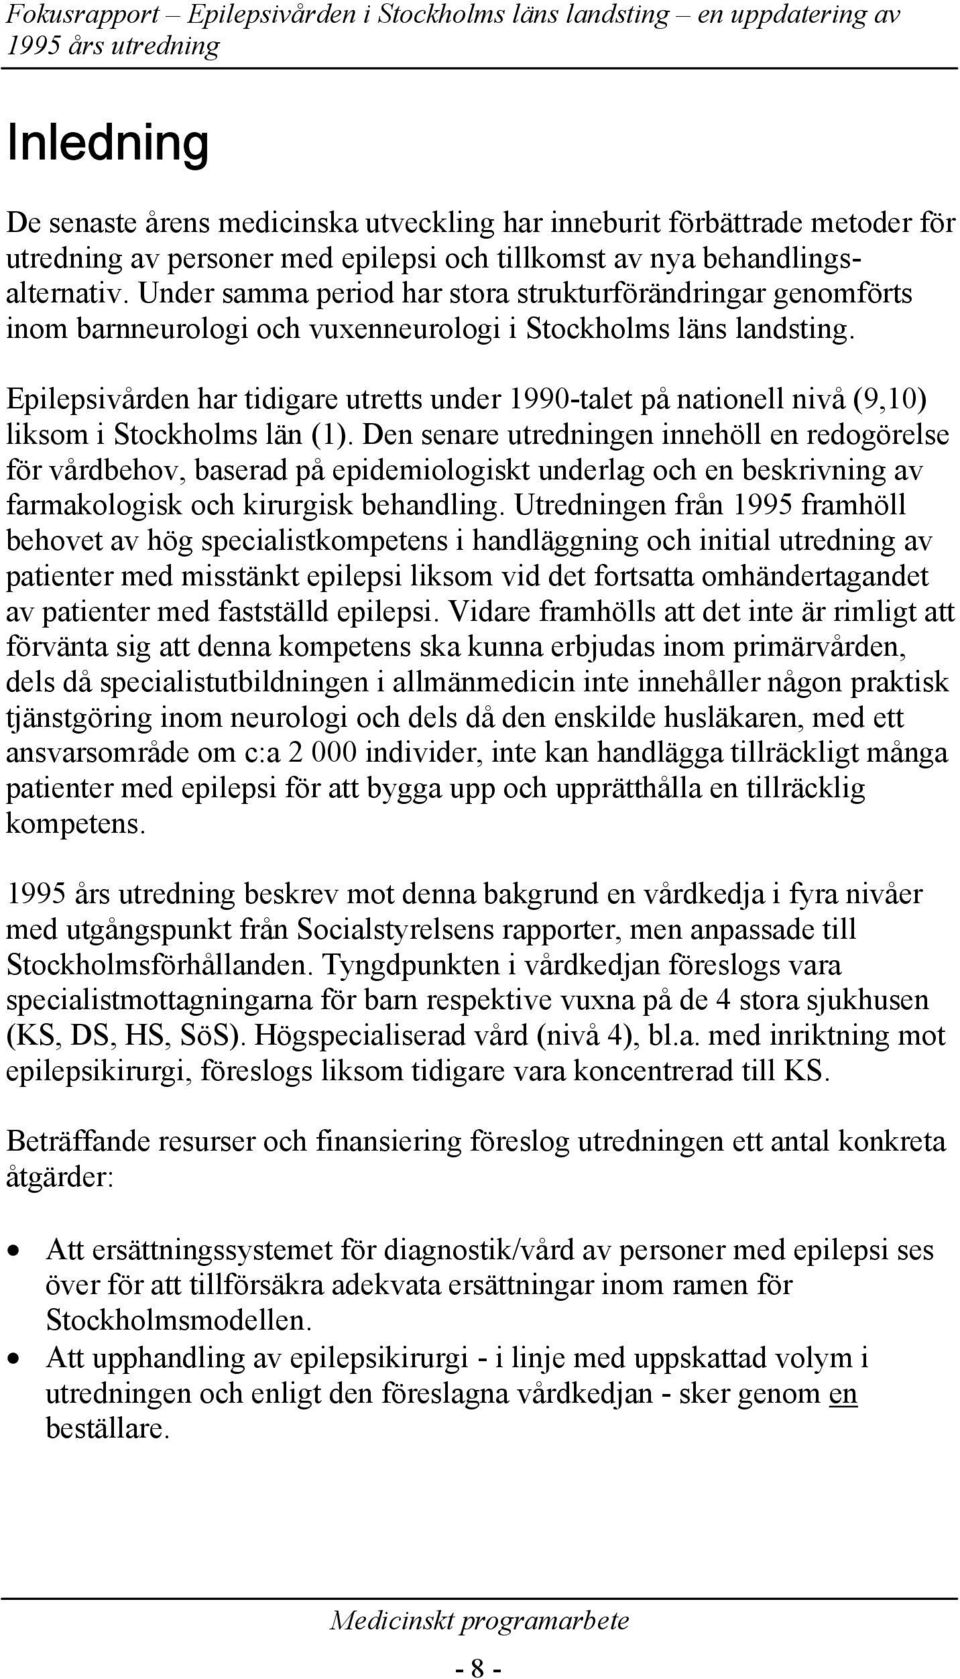 Epilepsivden har tidigare utretts under 1990-talet på nationell nivå (9,10) liksom i Stockholms län (1).